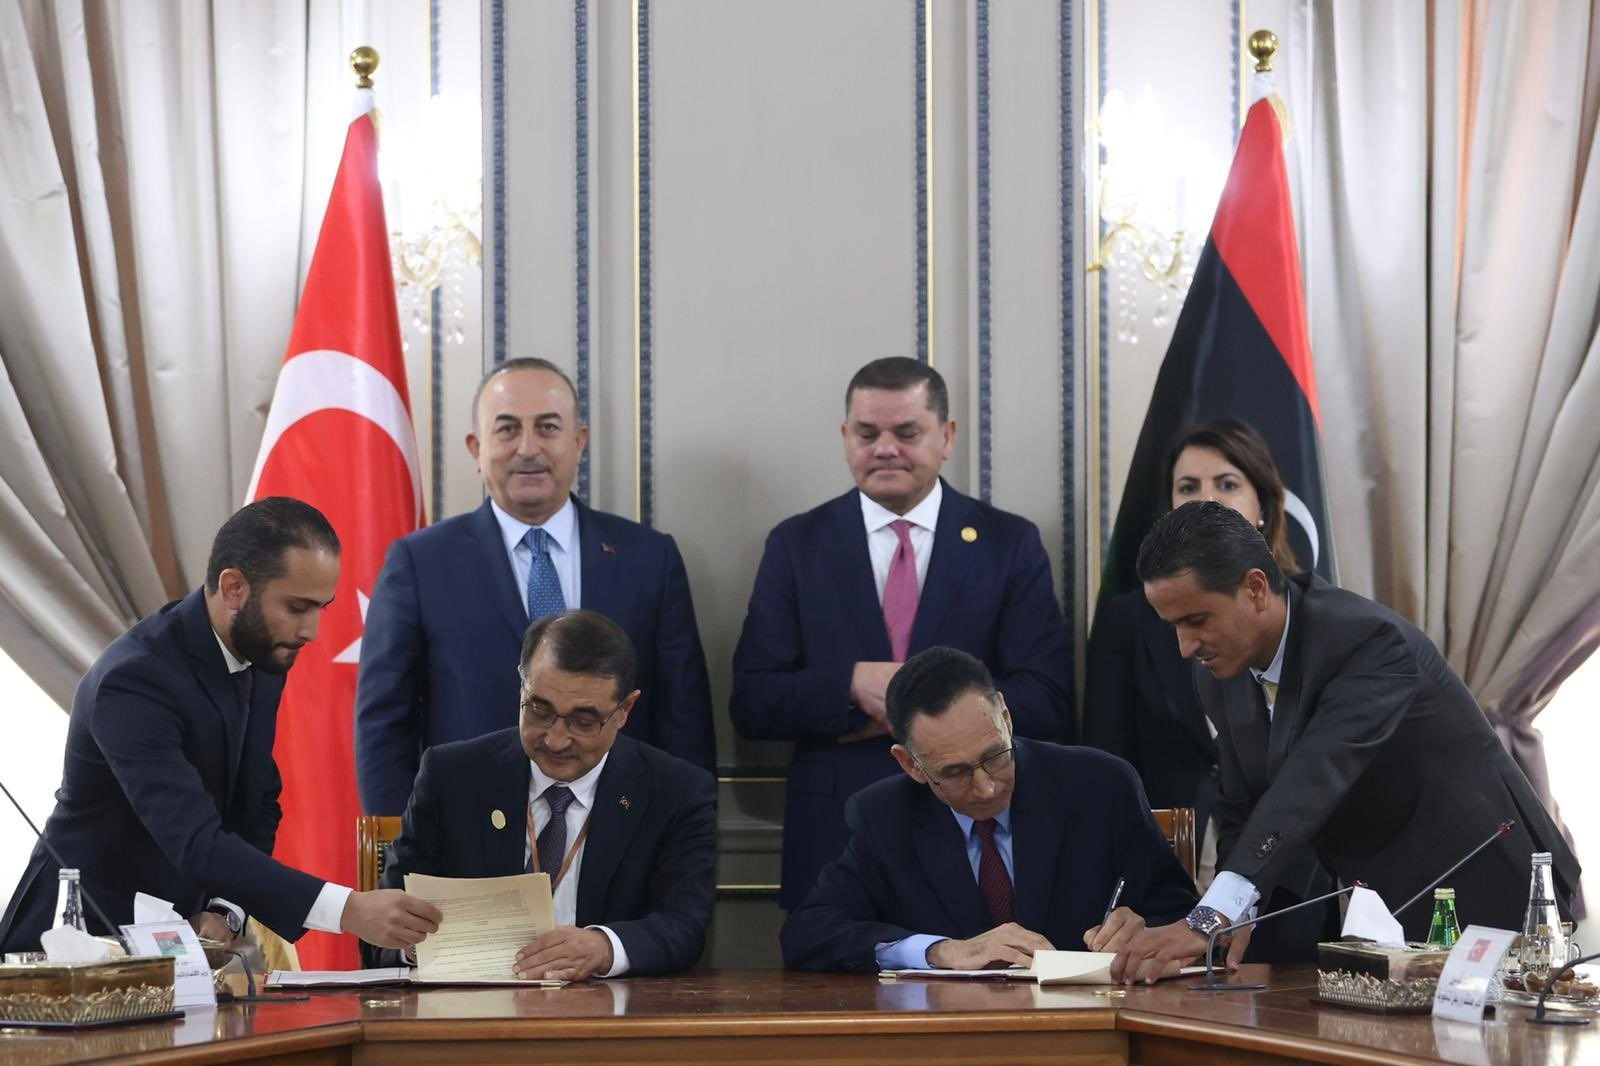 Σε εγρήγορση η Ελλάδα μετά τη νέα συμφωνία Τουρκίας και Λιβύης – Μπαράζ επαφών και ετοιμότητα για όλα